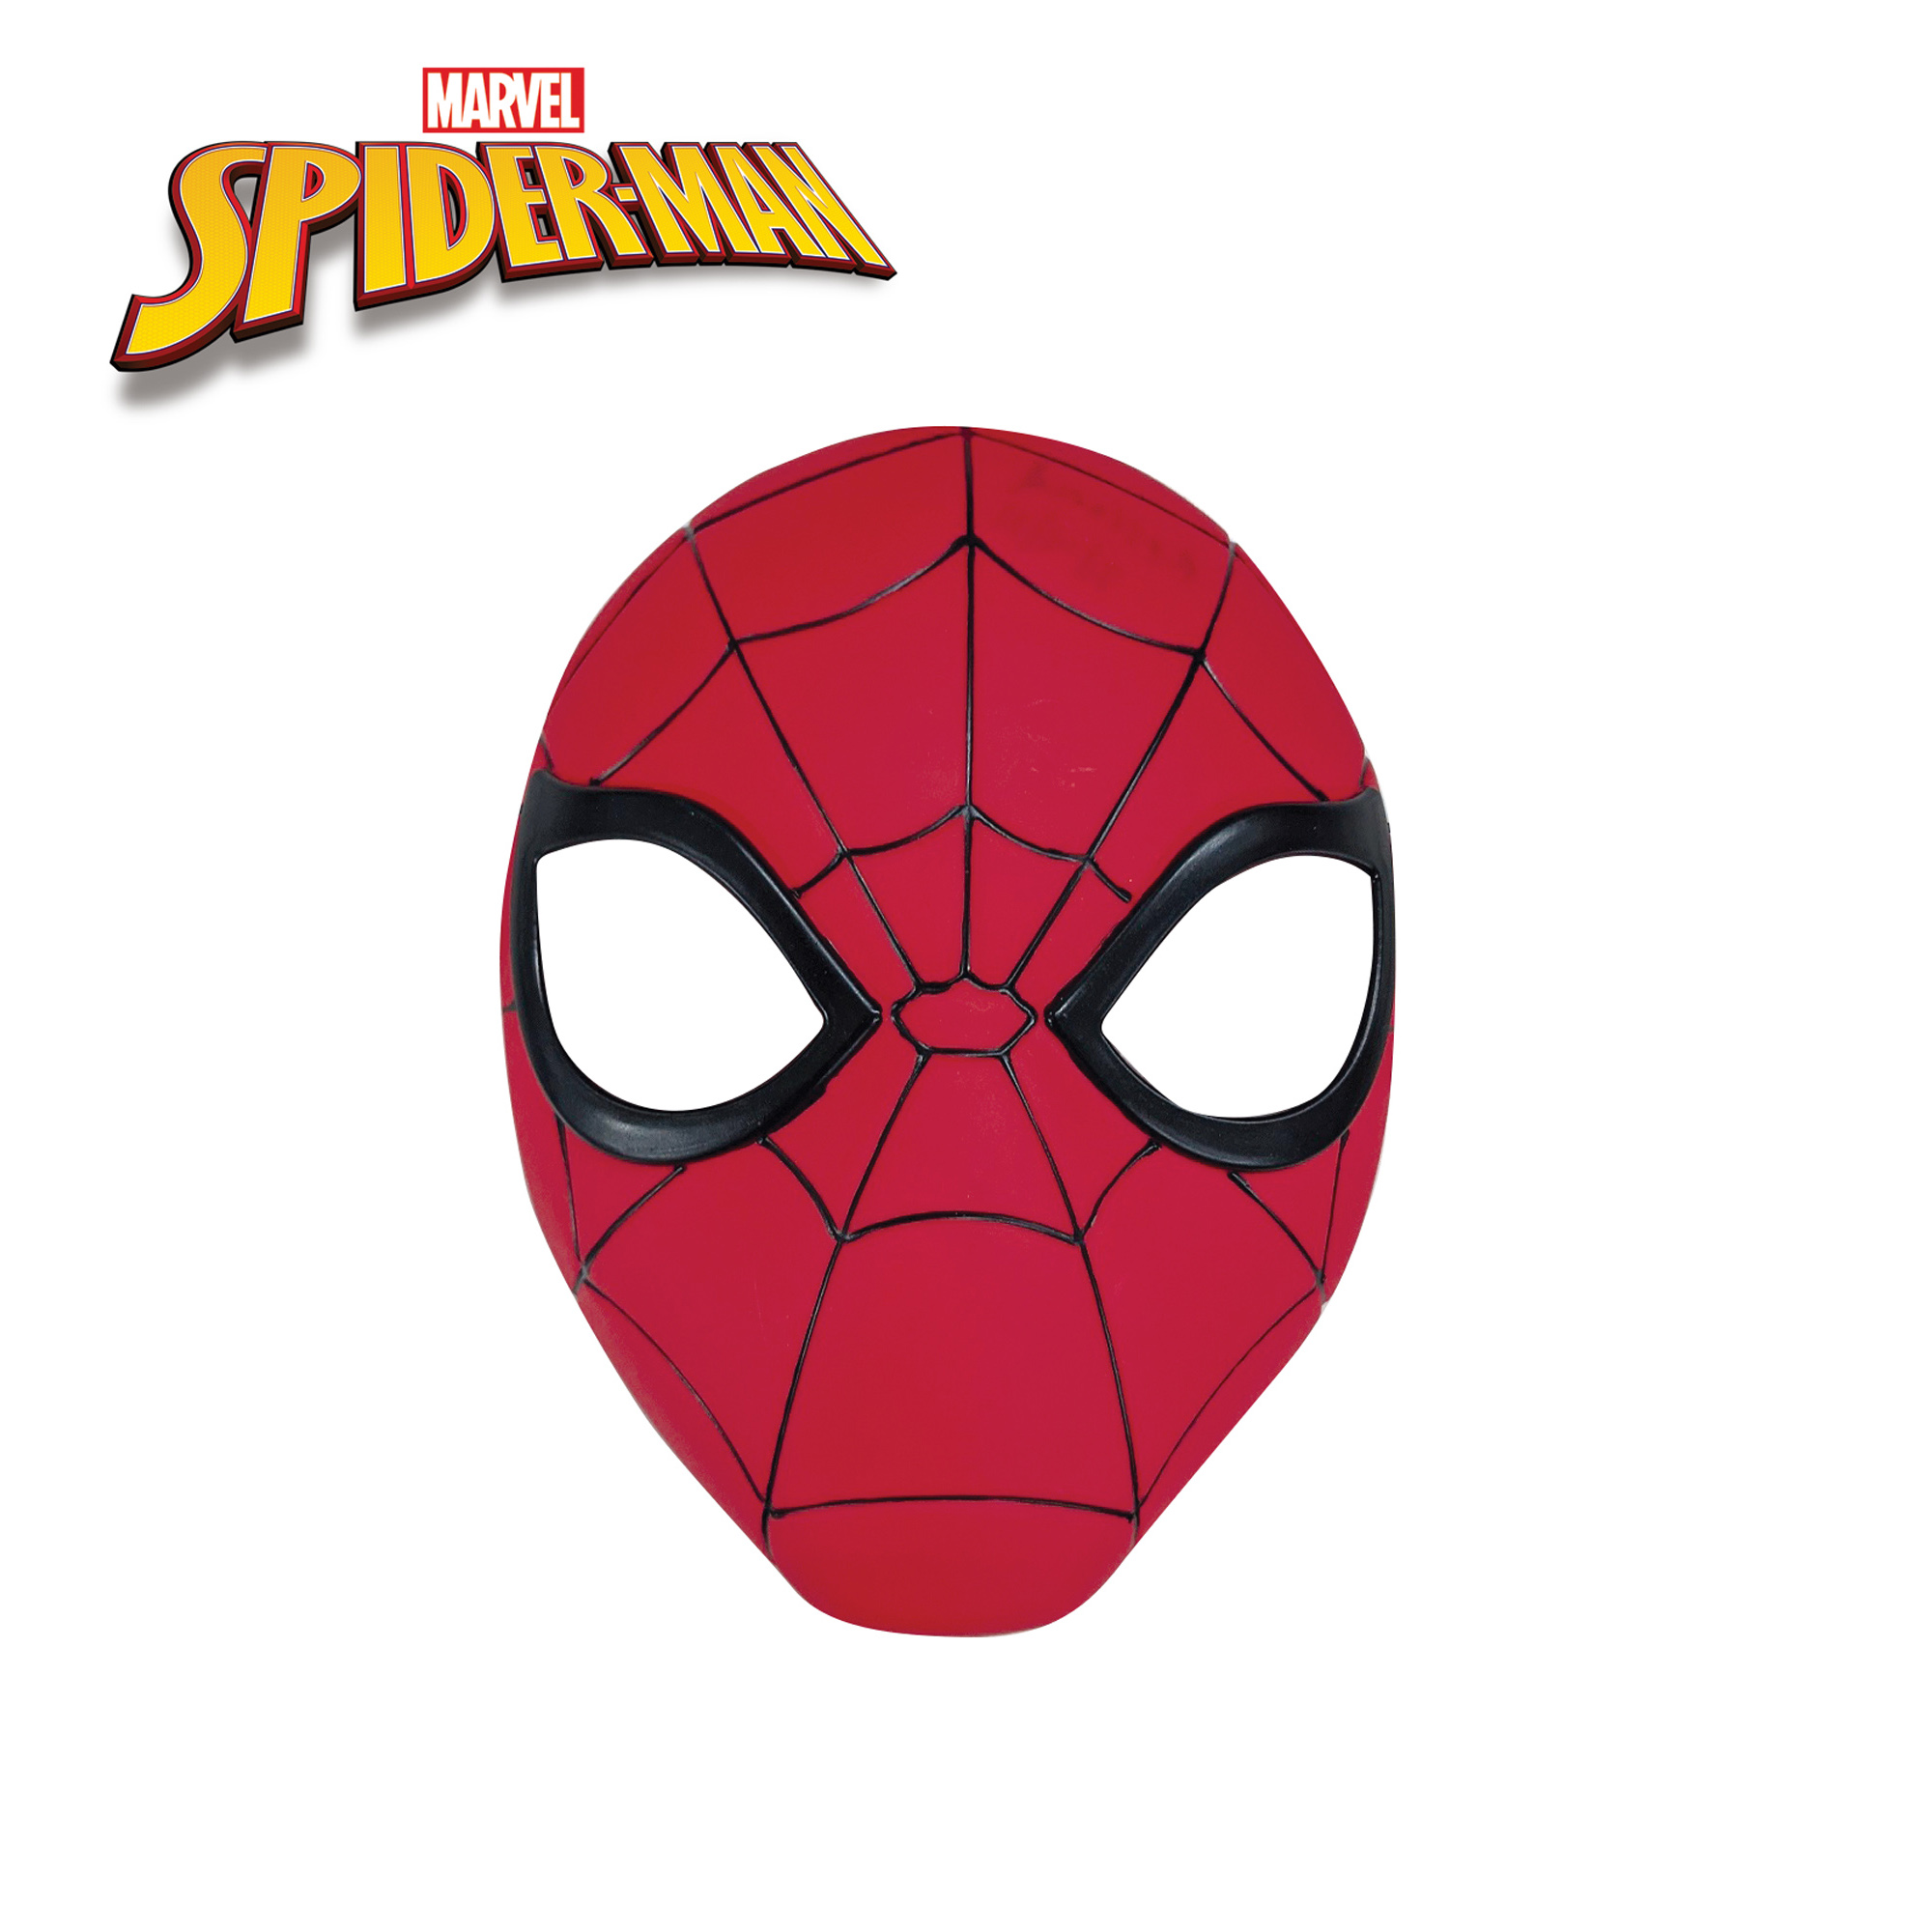 Costume Spiderman con Muscoli e ragno per bambini dai 3 ai 12 anni